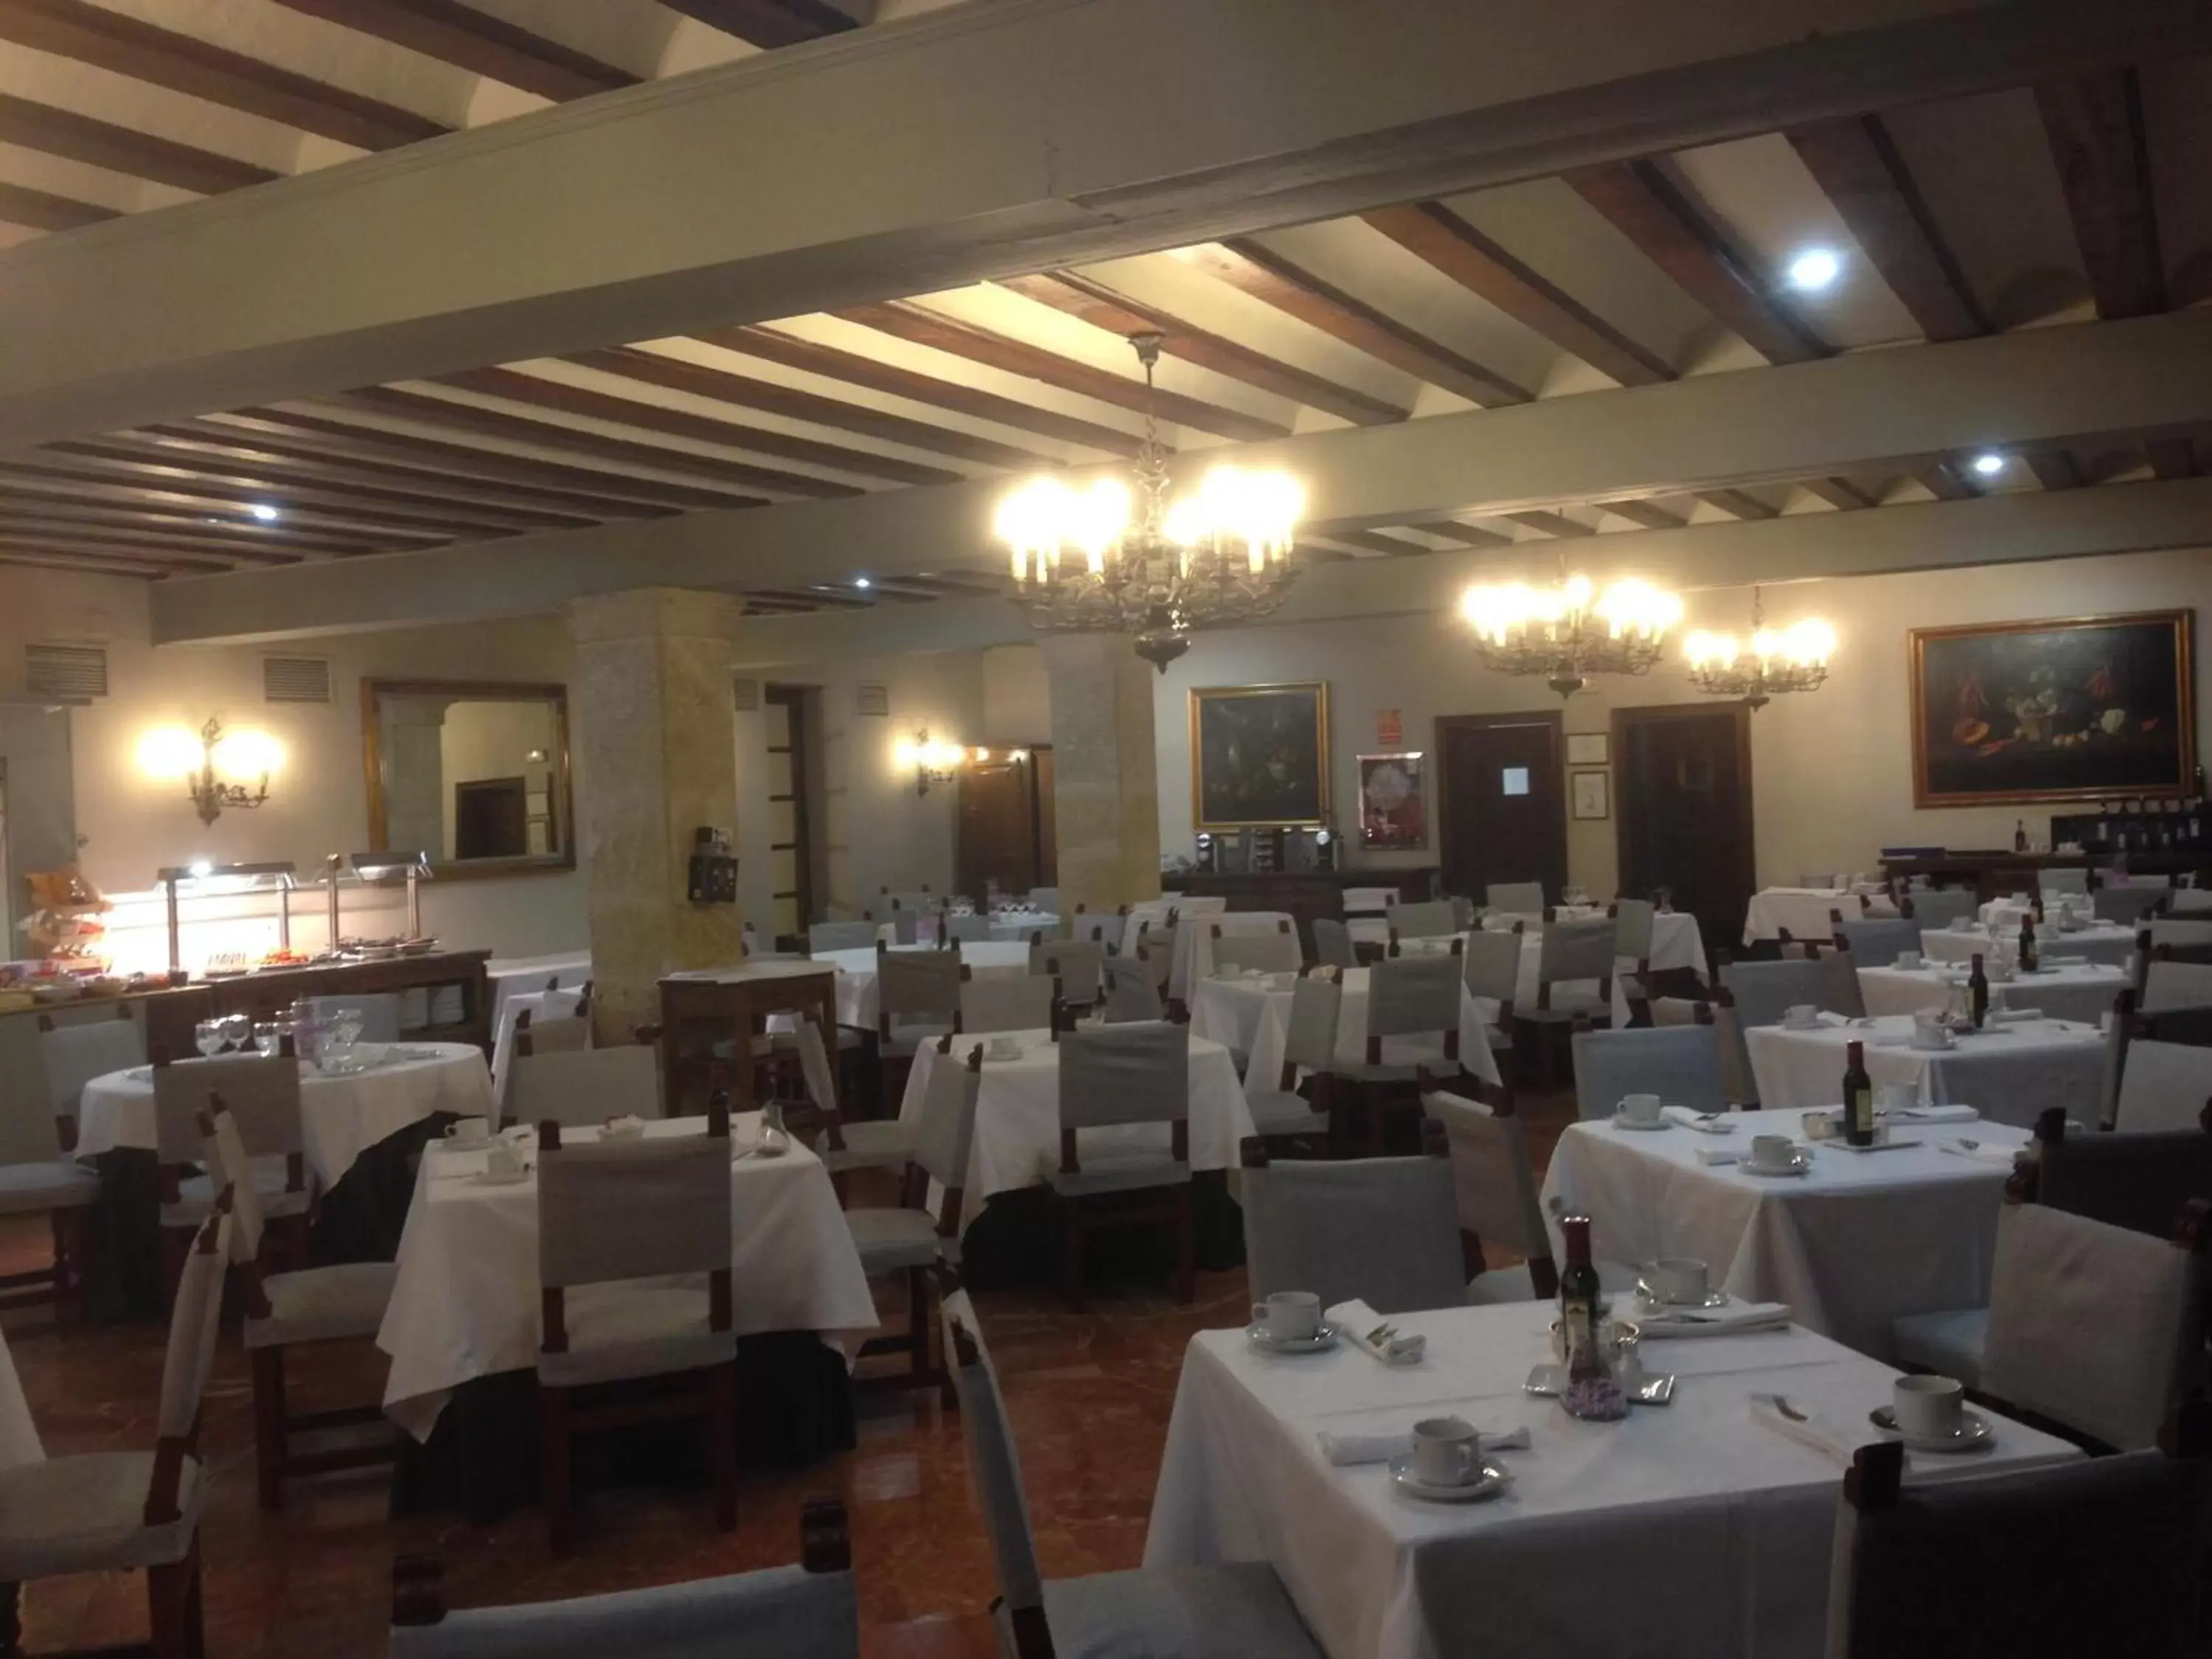 Restaurant/Places to Eat in Parador de Zamora